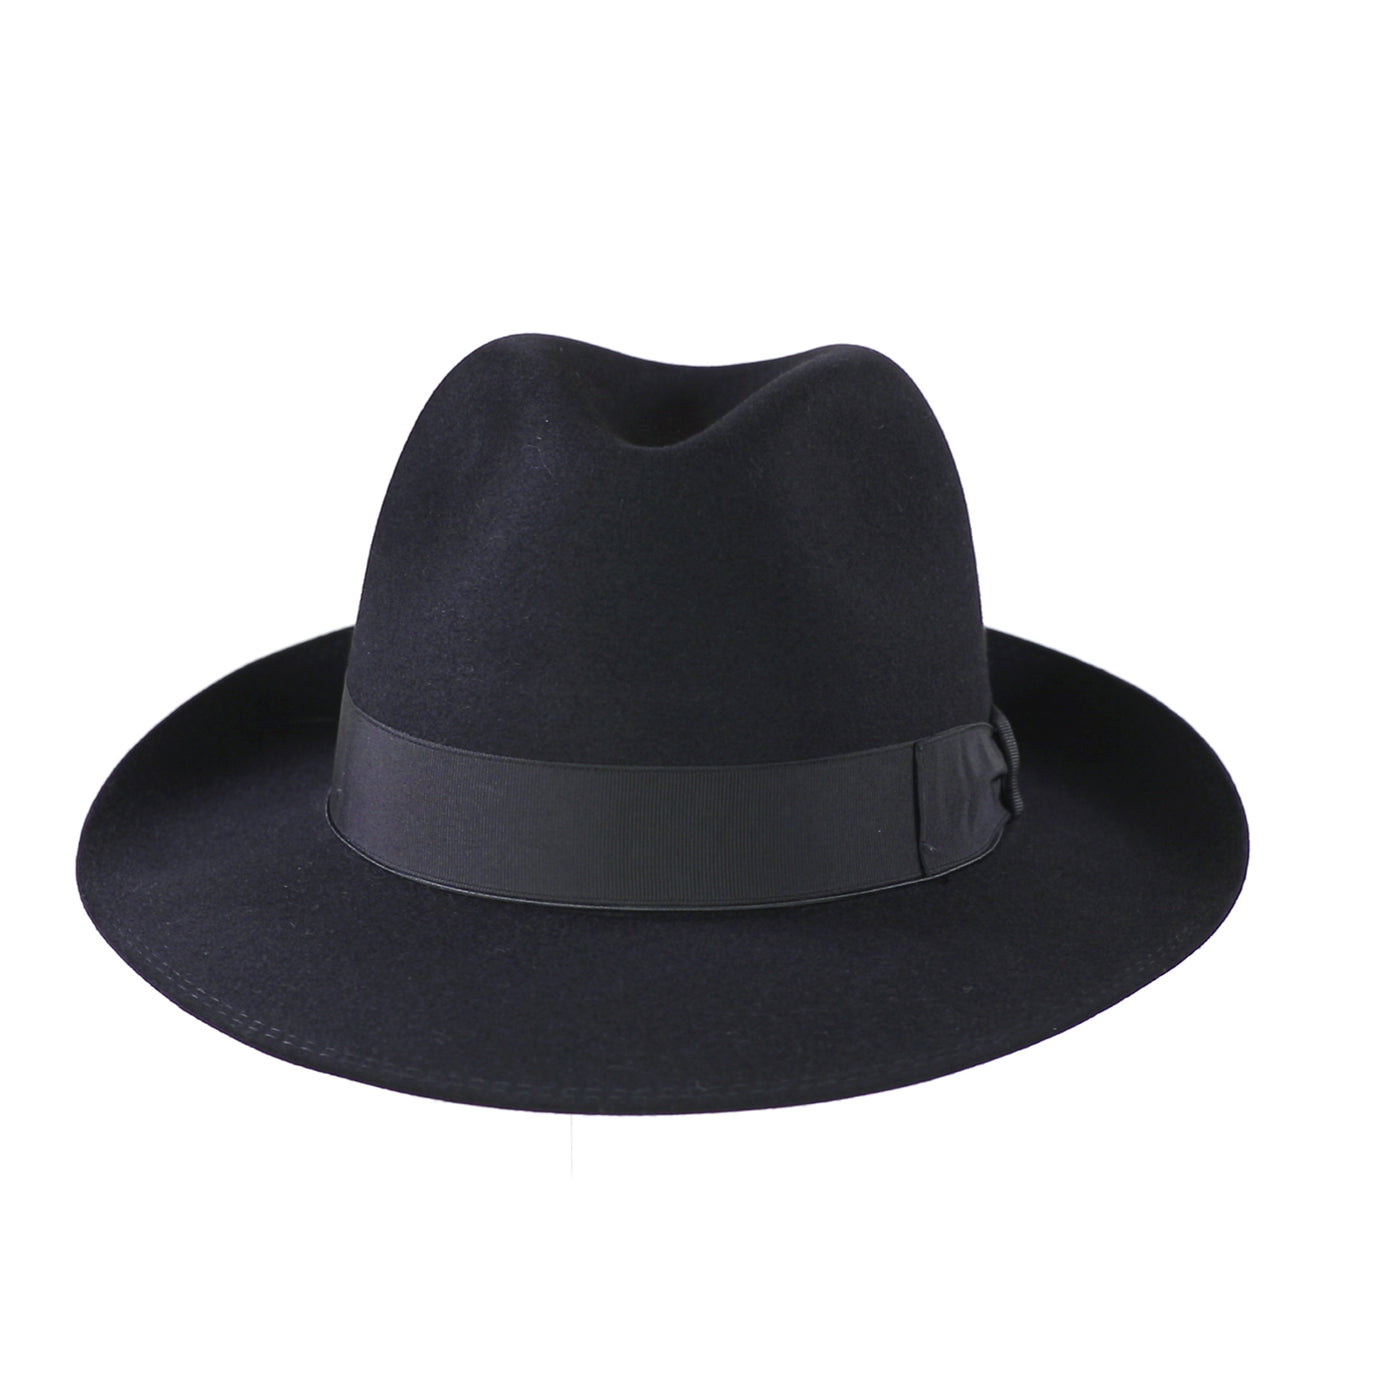 Torino 29, product_type] - Borsalino for Atica fedora hat